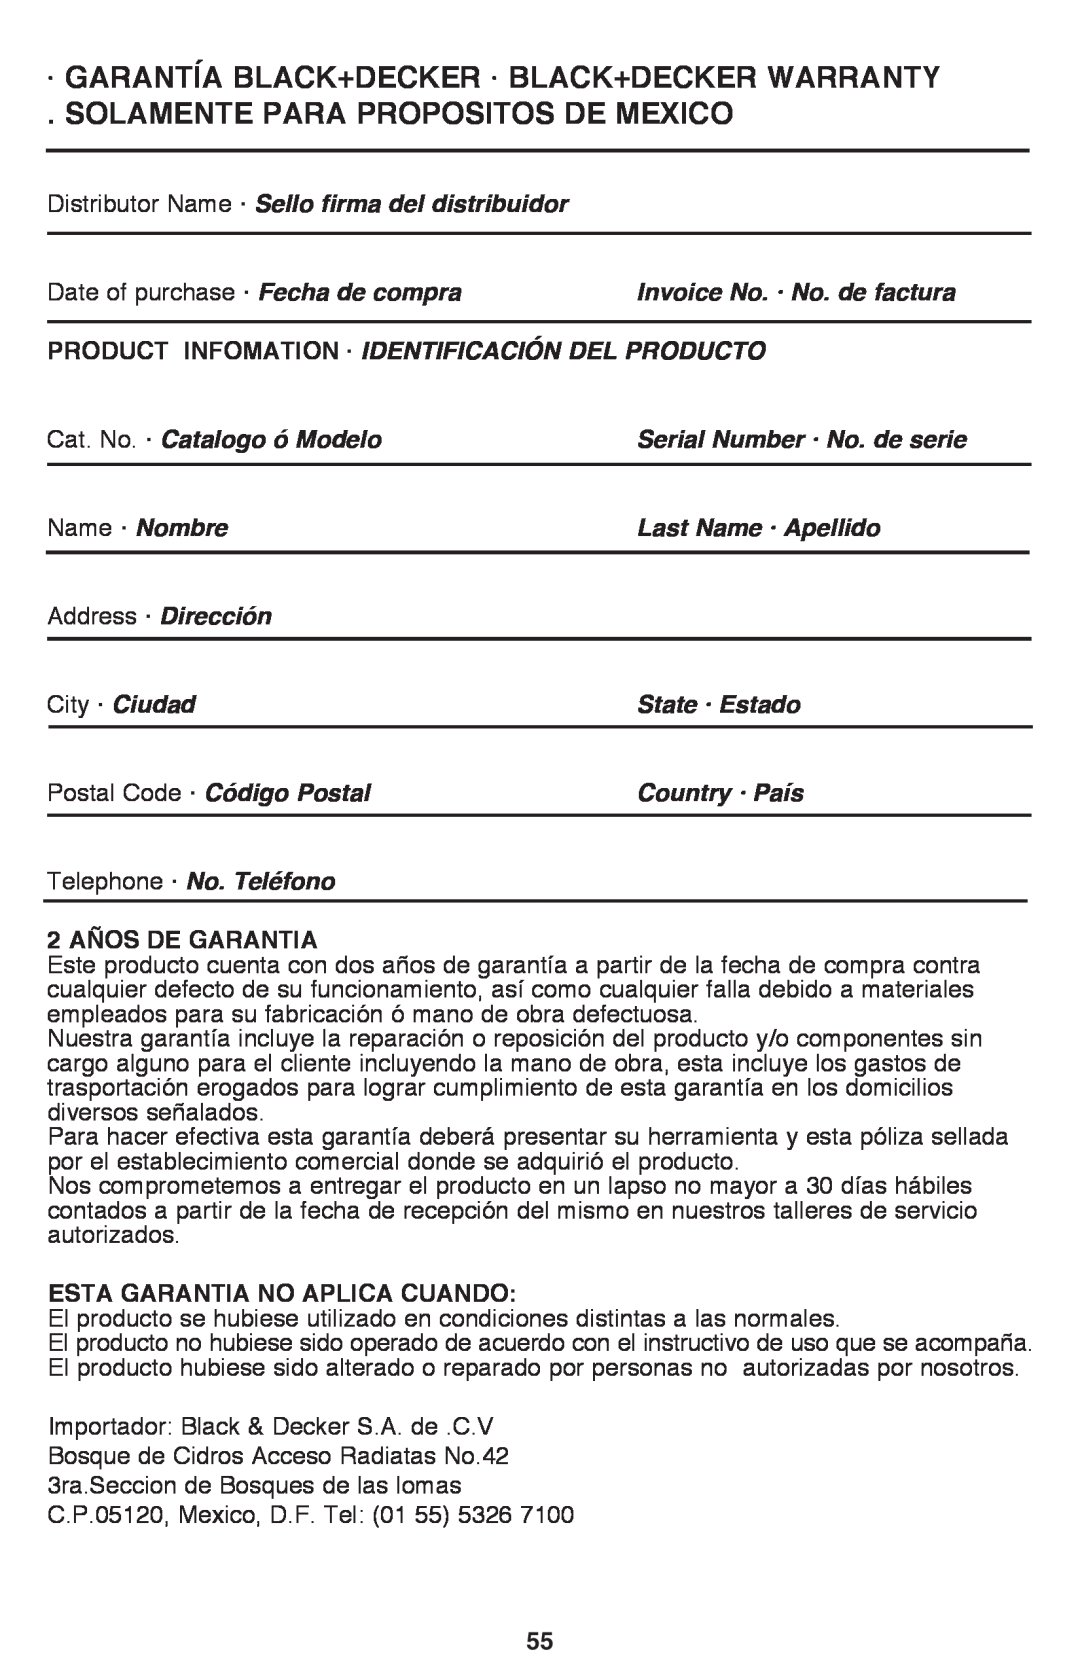 Black & Decker CM2040 · Garantía Black+Decker · Black+Decker Warranty, Solamente Para Propositos De Mexico 